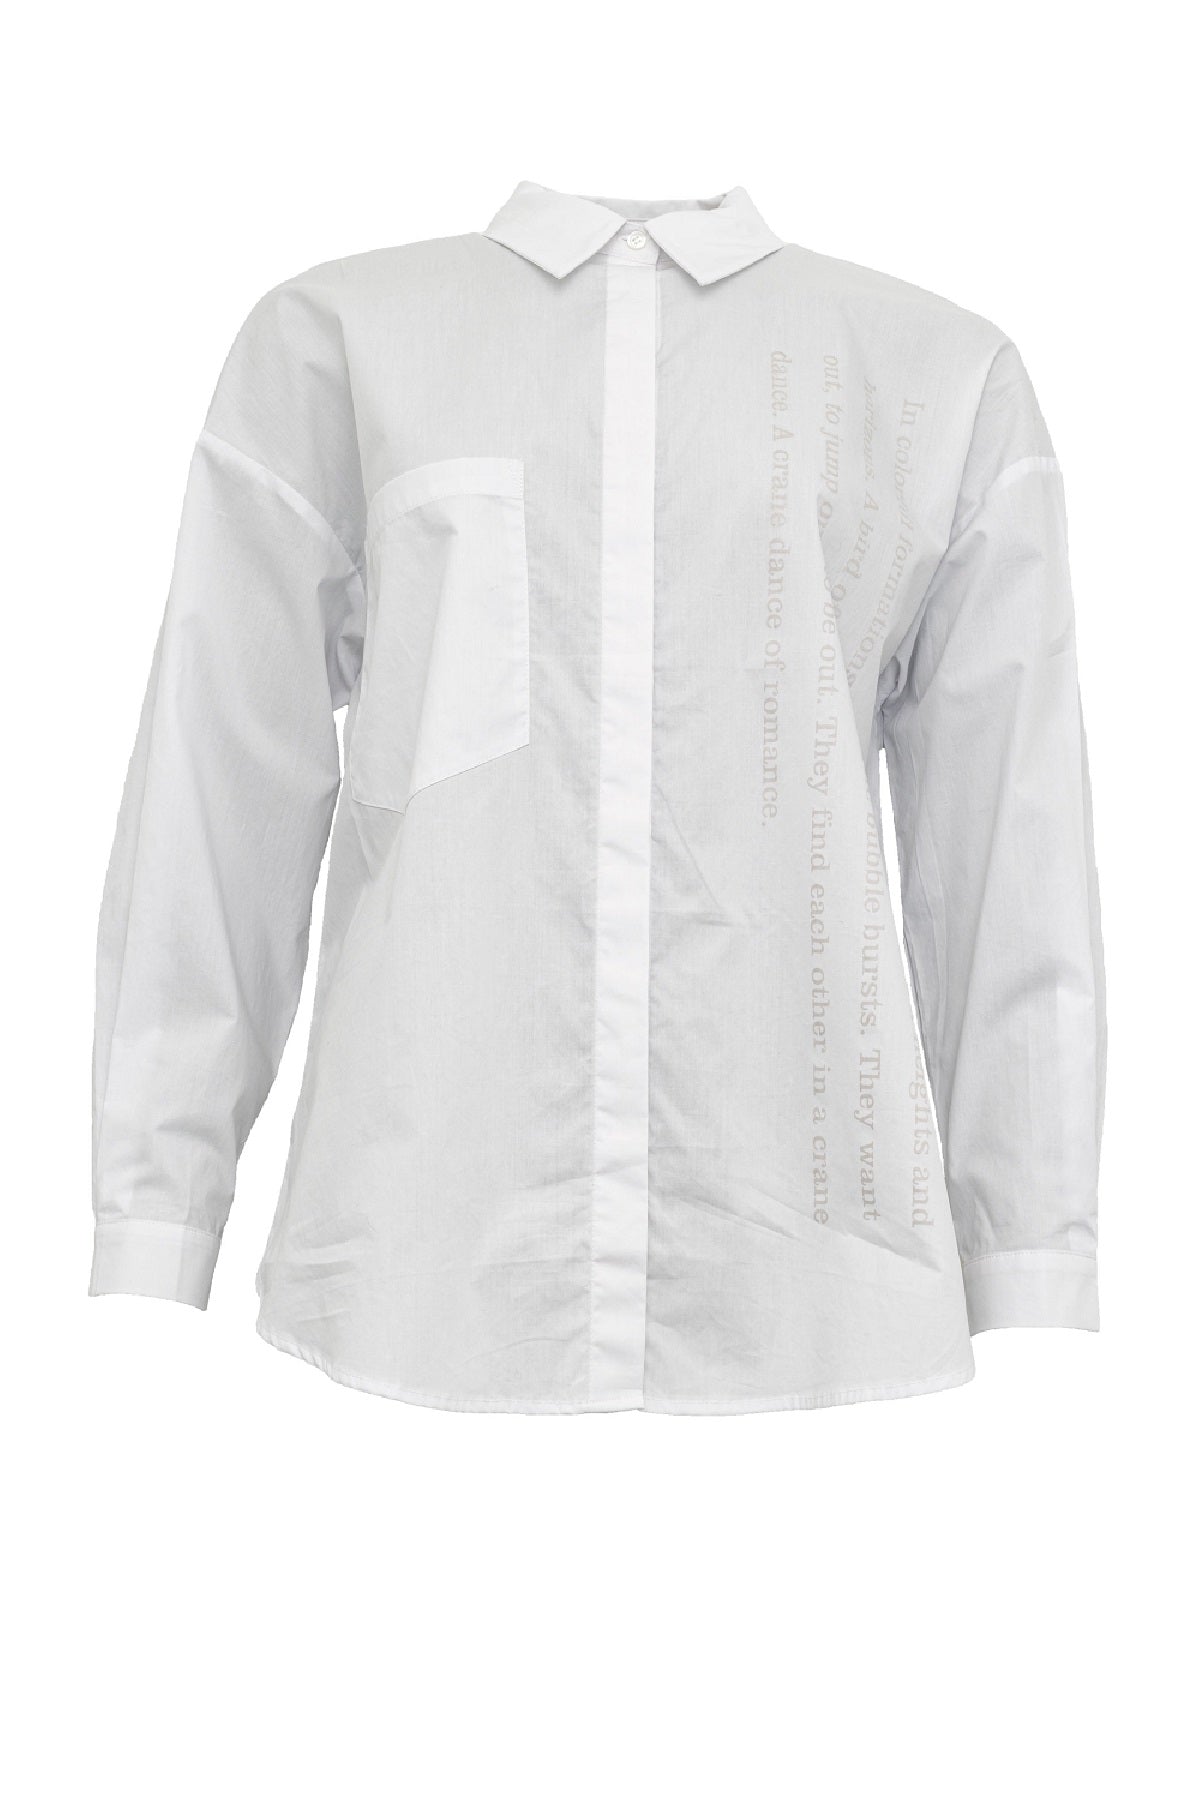 Costamani True shirt, White